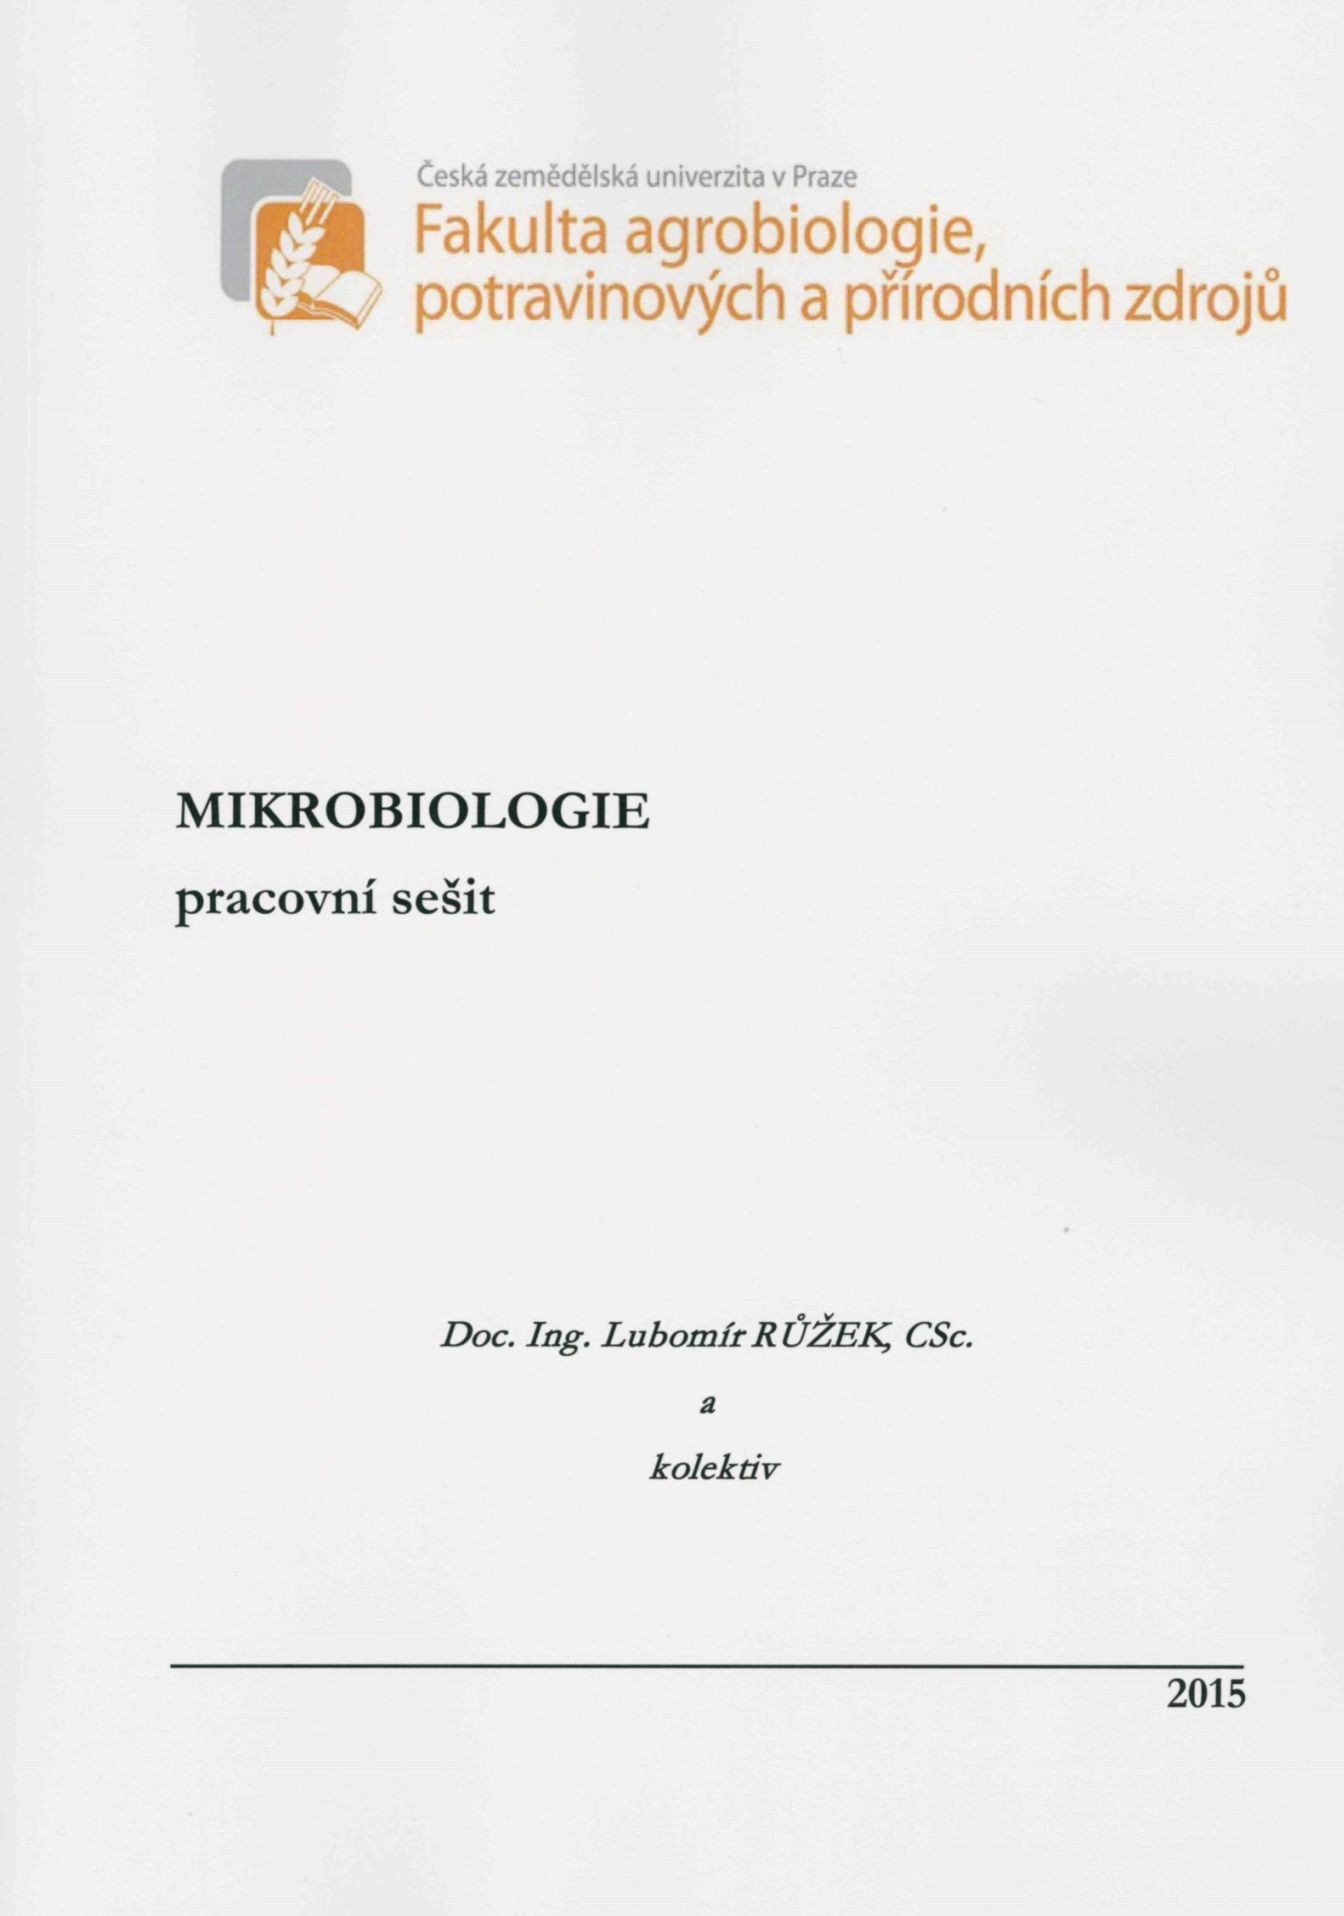 Mikrobiologie - pracovní sešit, 928